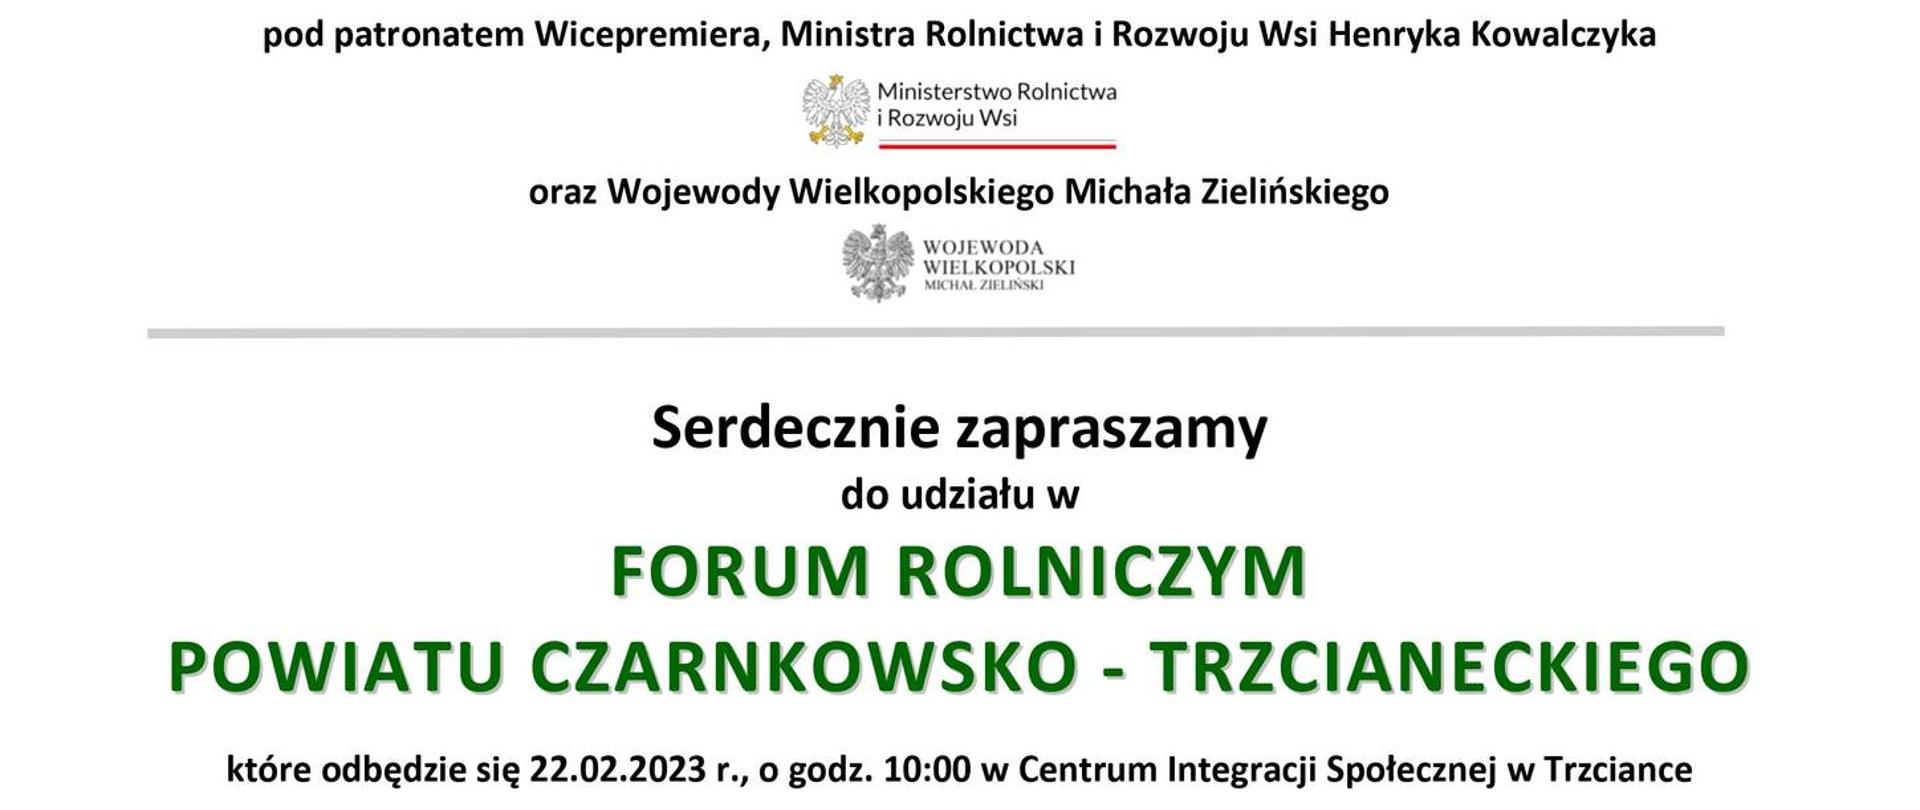 Forum rolnicze 22.02.2023 godz.10:00 Centrum Integracji Społecznej w Trzciance